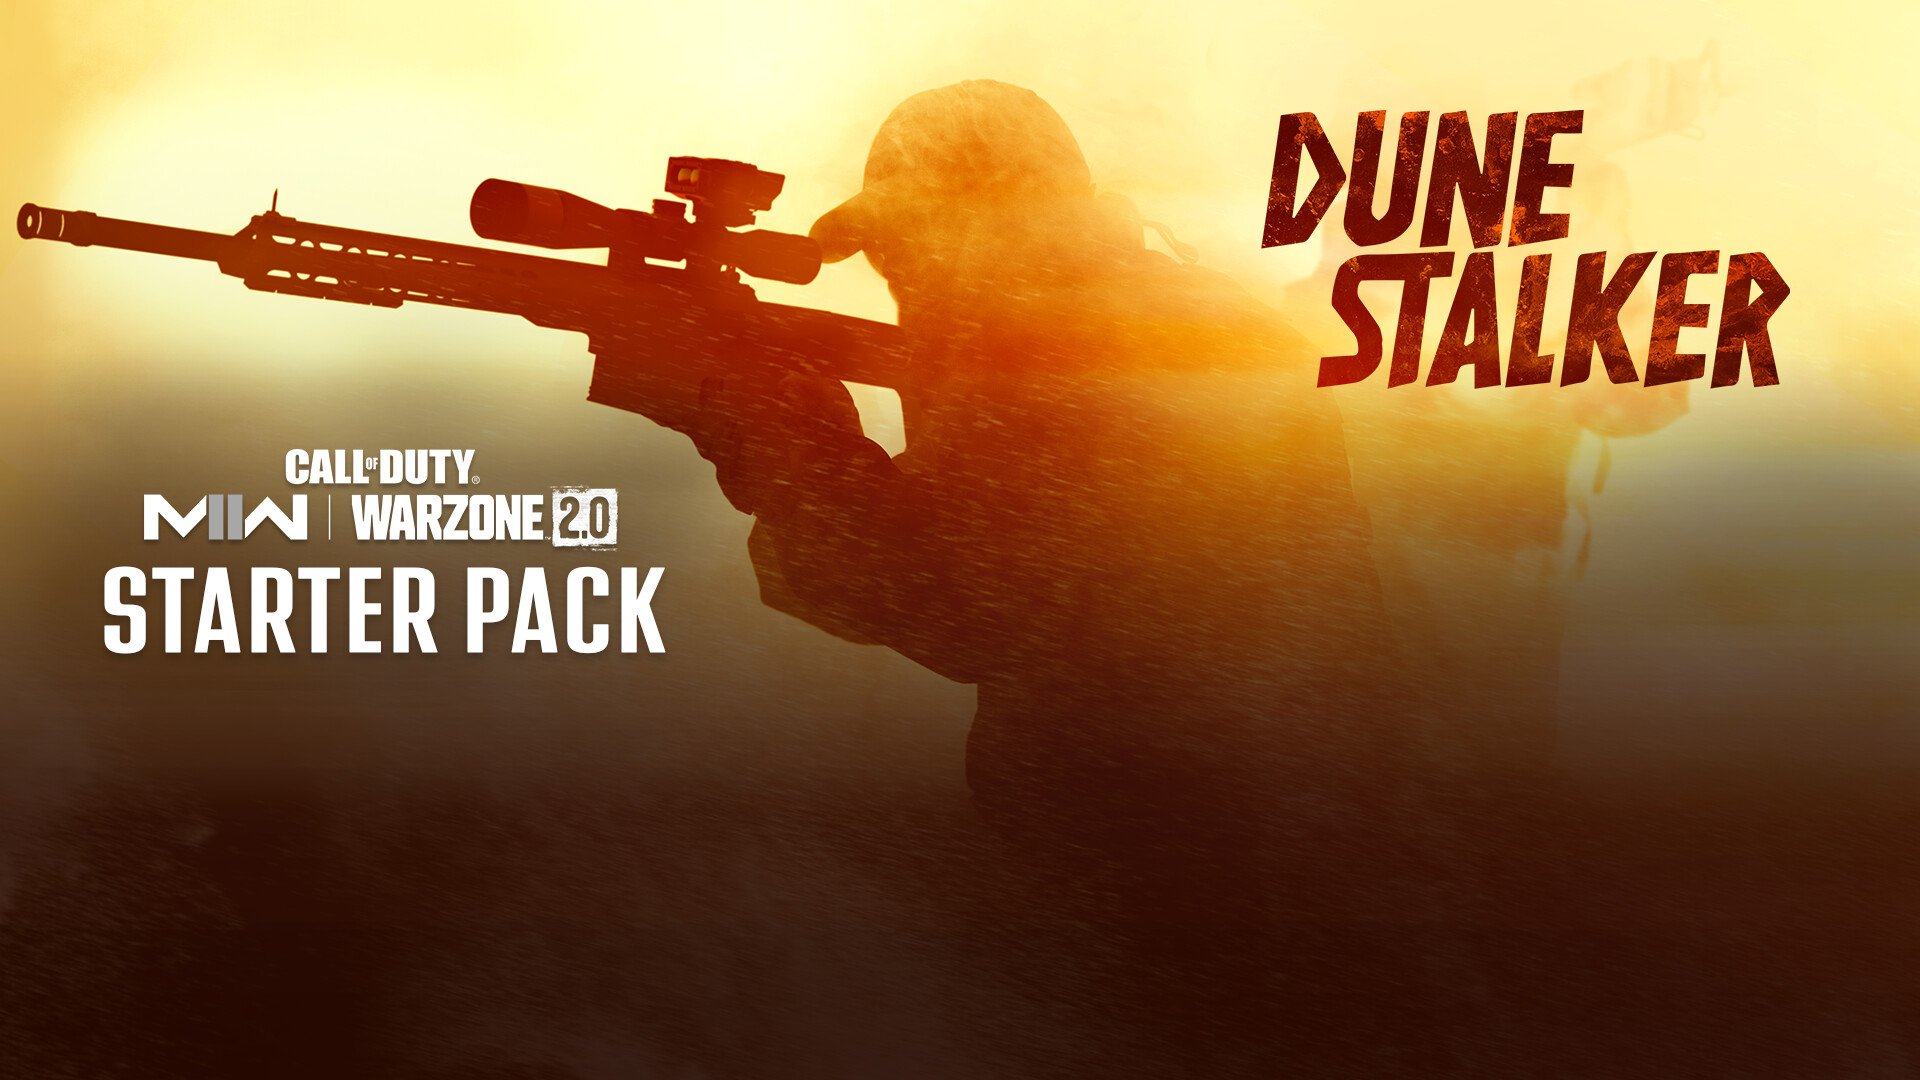 Call Of Duty: Modern Warfare II - Dune Stalker: Starter Pack DLC Steam Altergift